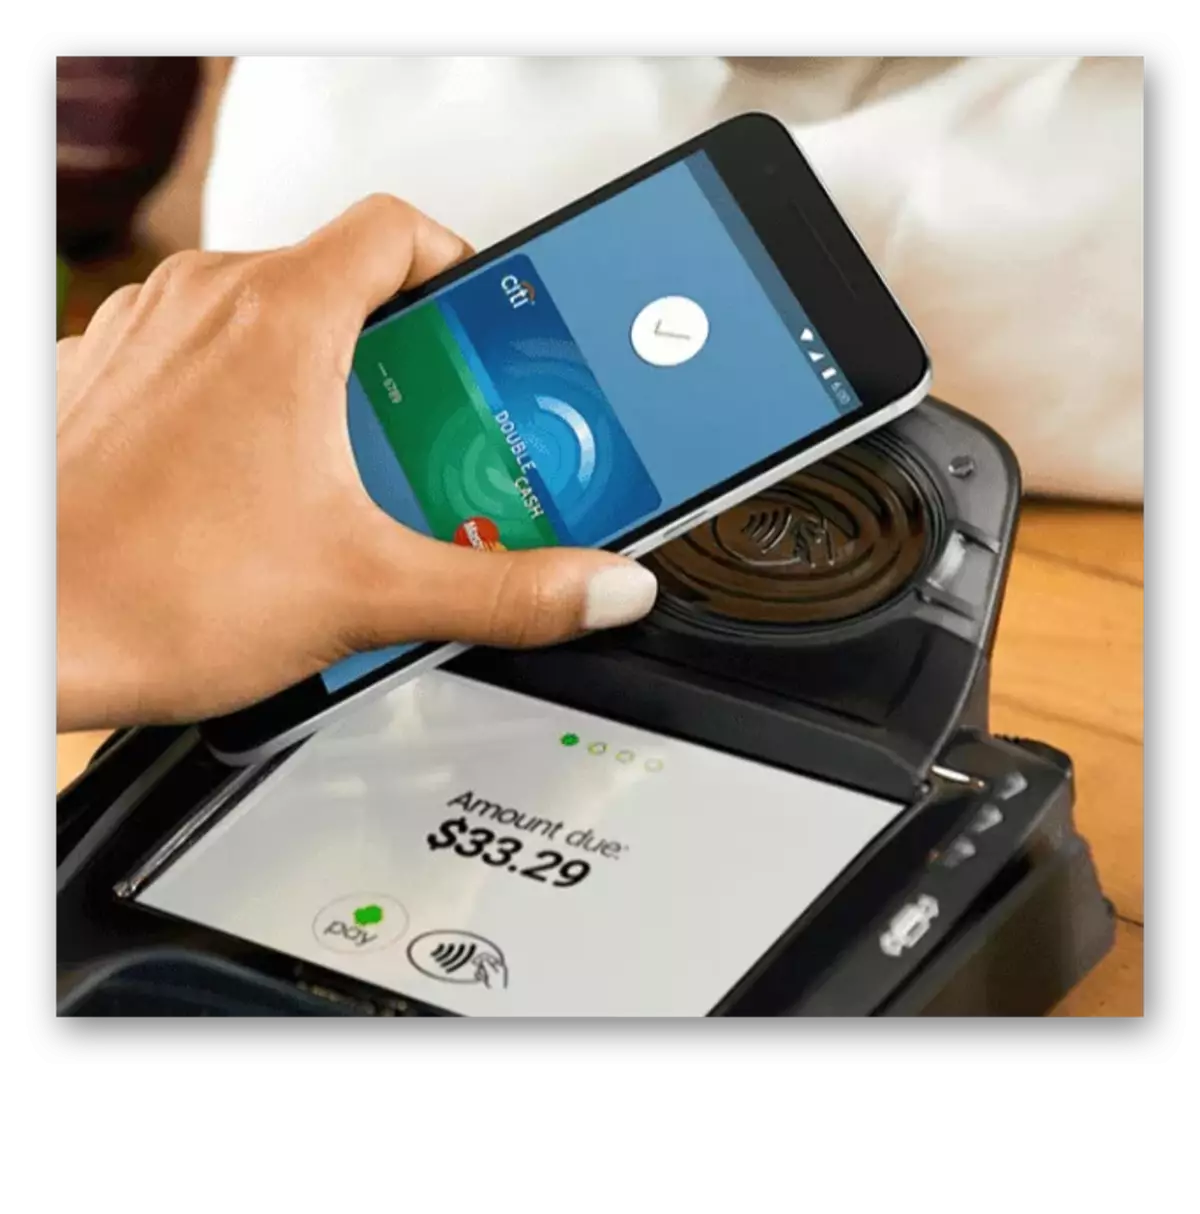 Proces płatności za pomocą Android-Pay